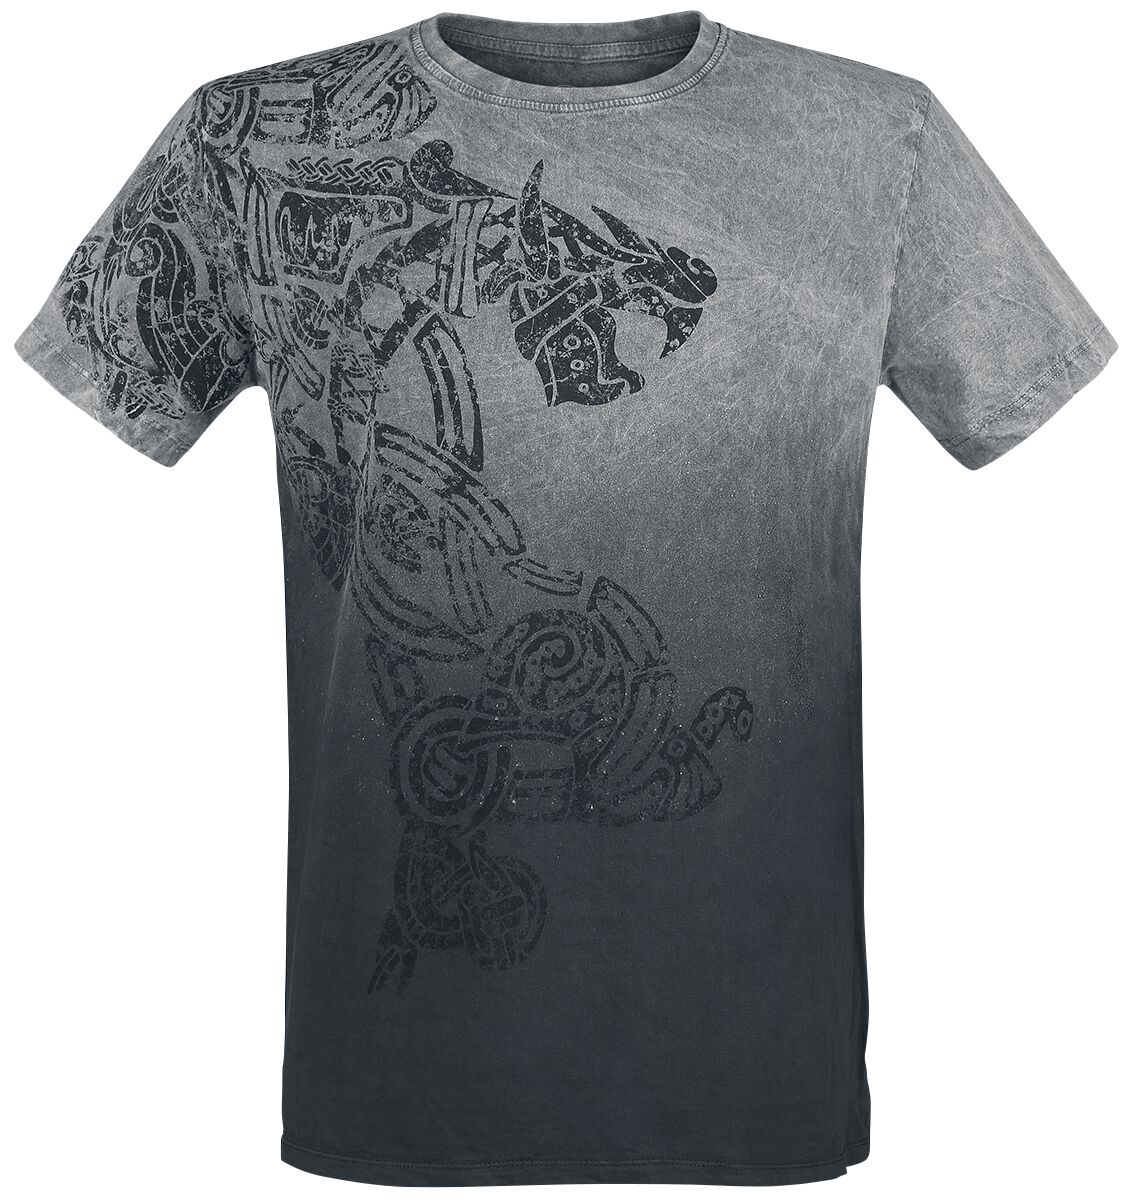 Outer Vision Dragon Tattoo T-Shirt grau in XXL